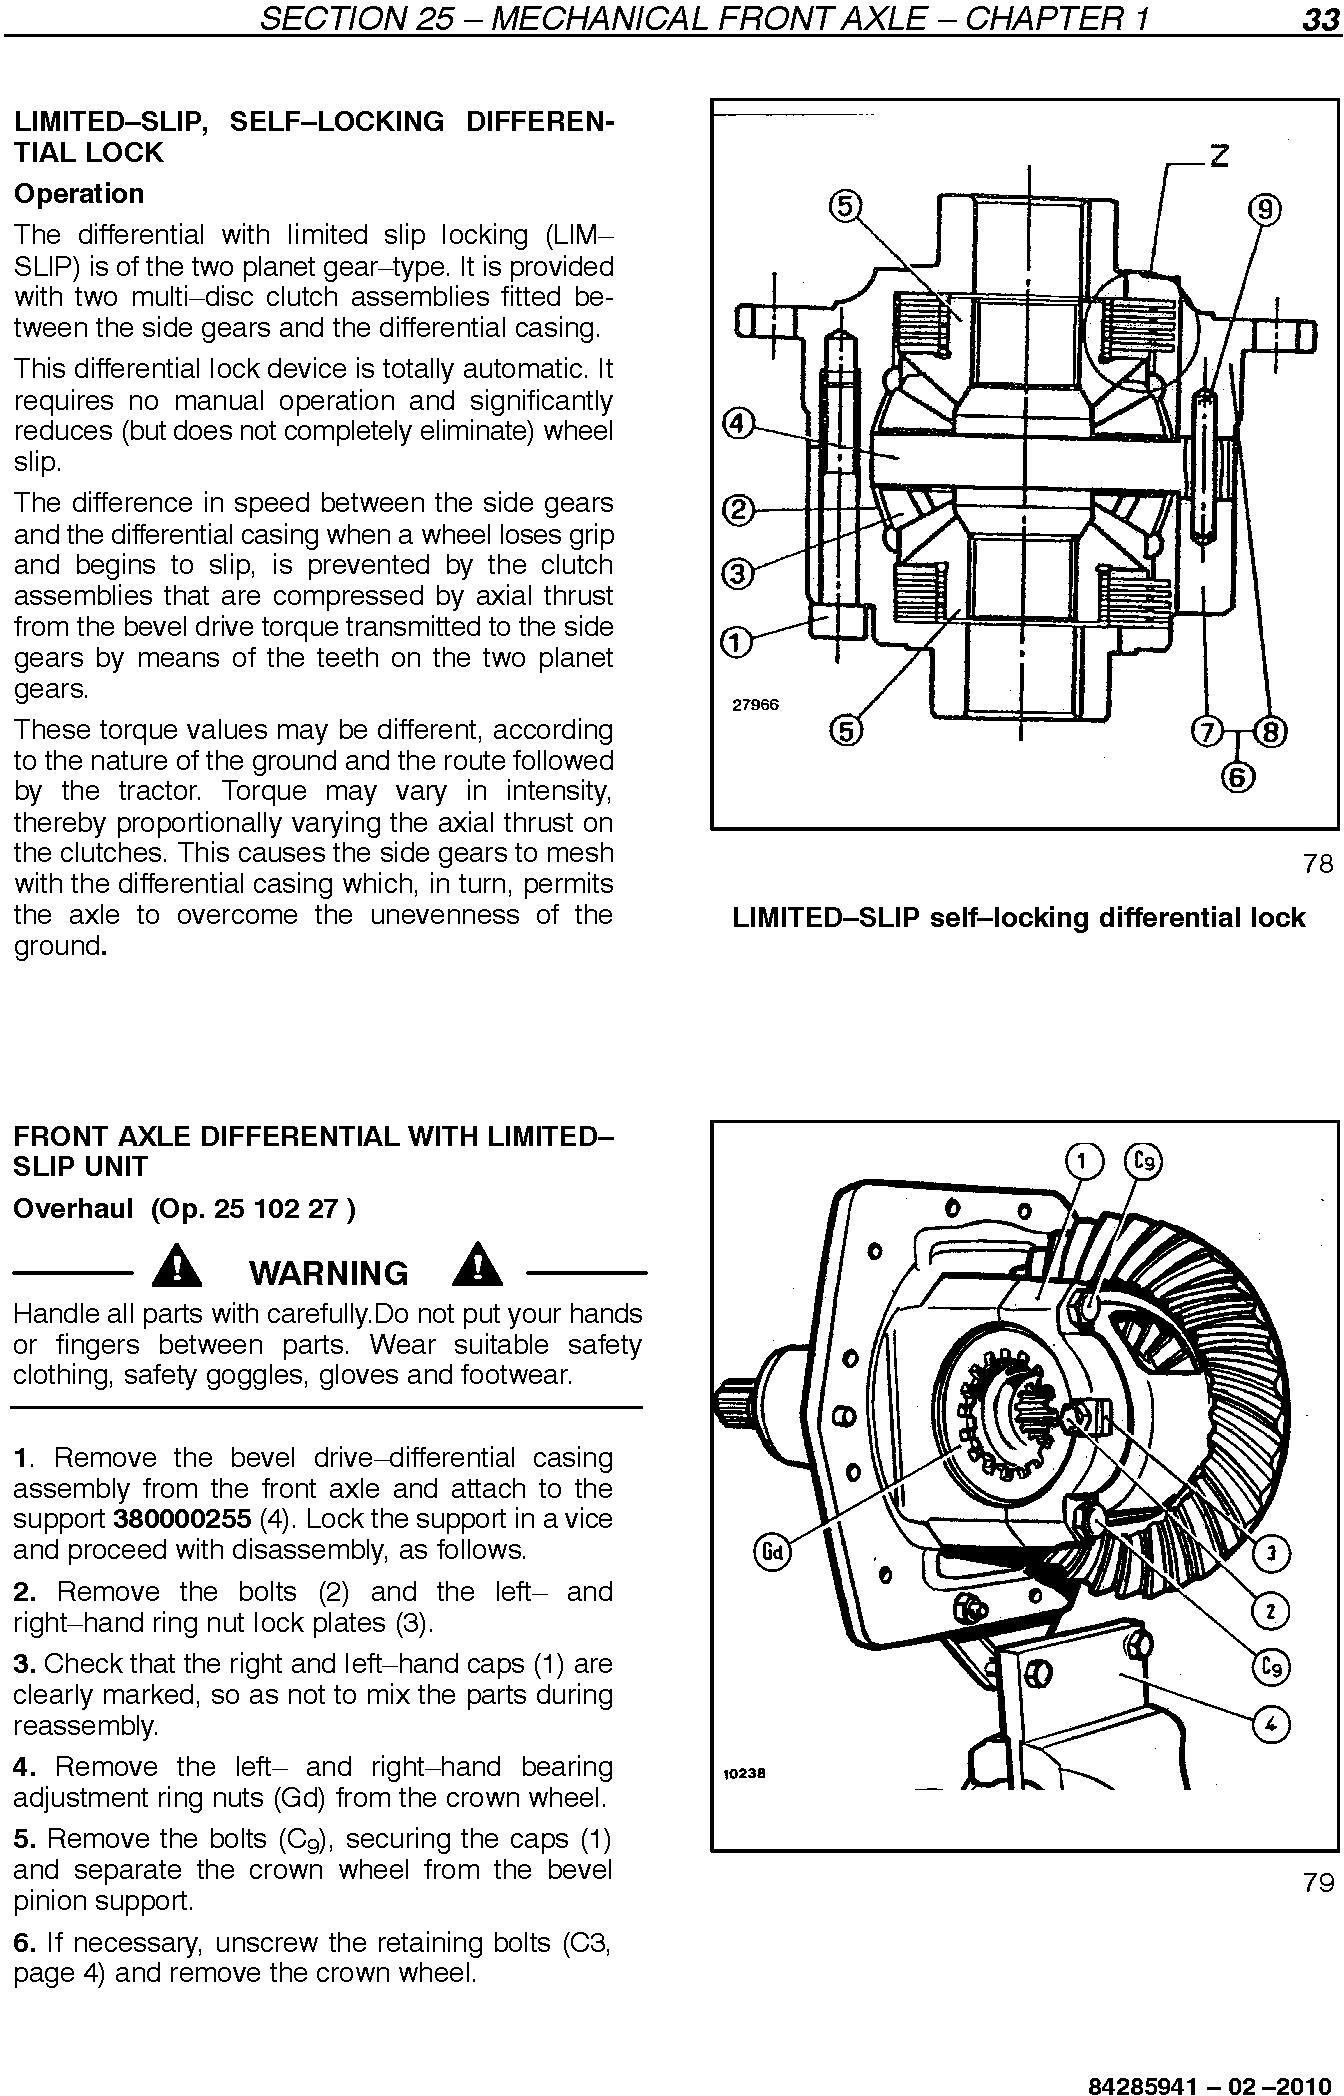 New Holland TD65F, TD75F, TD85F Tractors Service Manual - 3